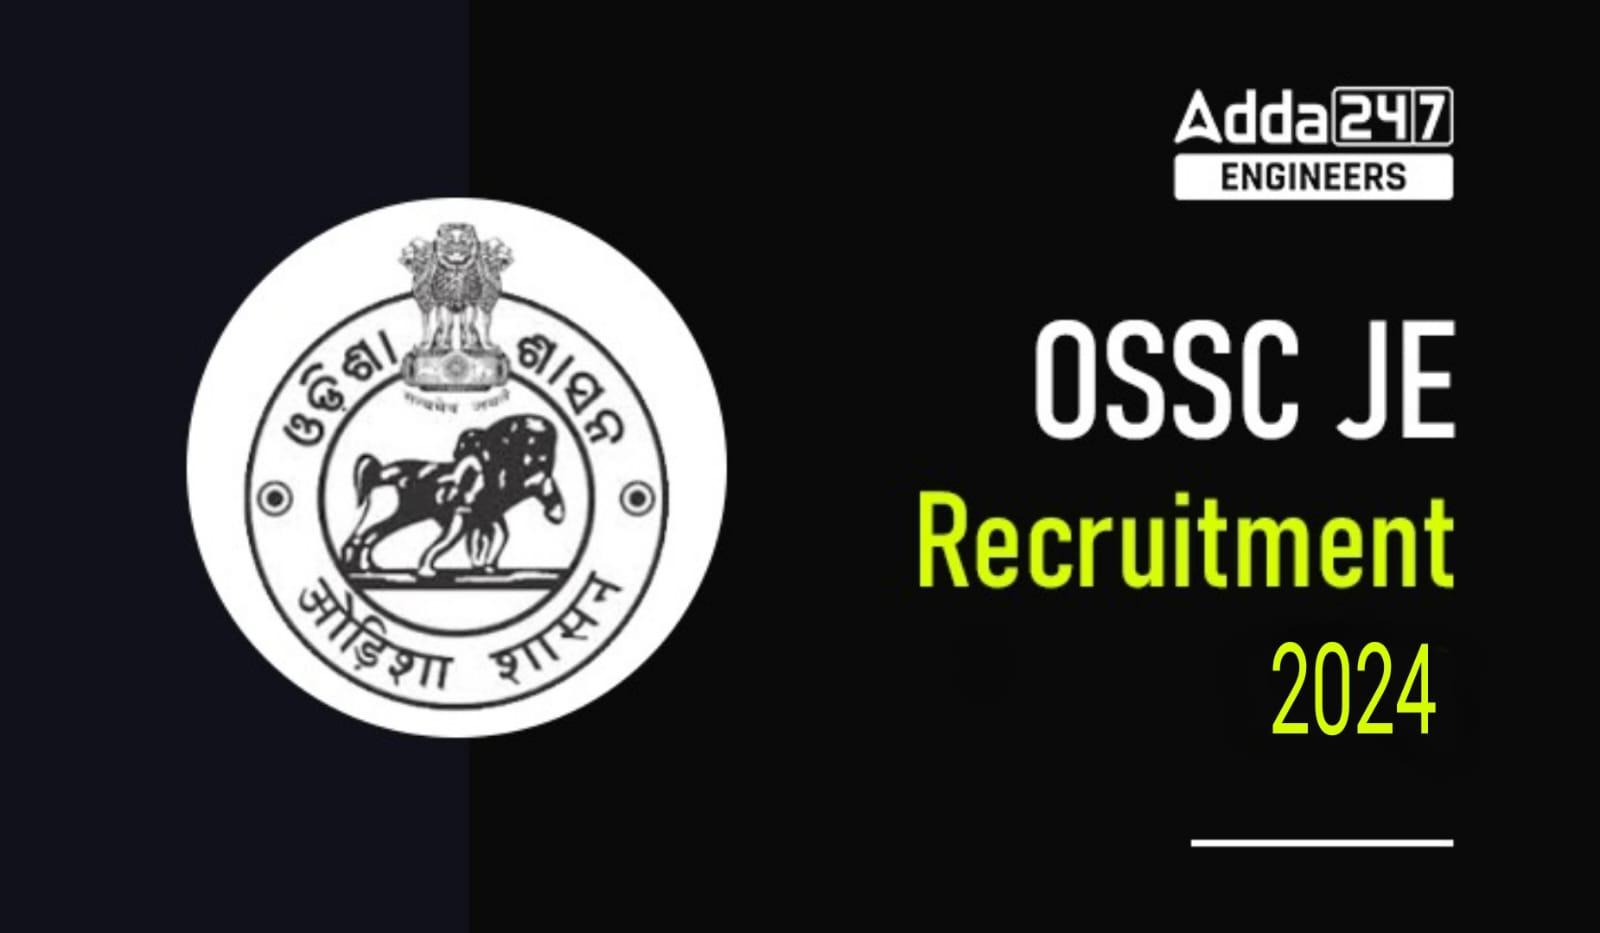 OSSC JE Recruitment 2024